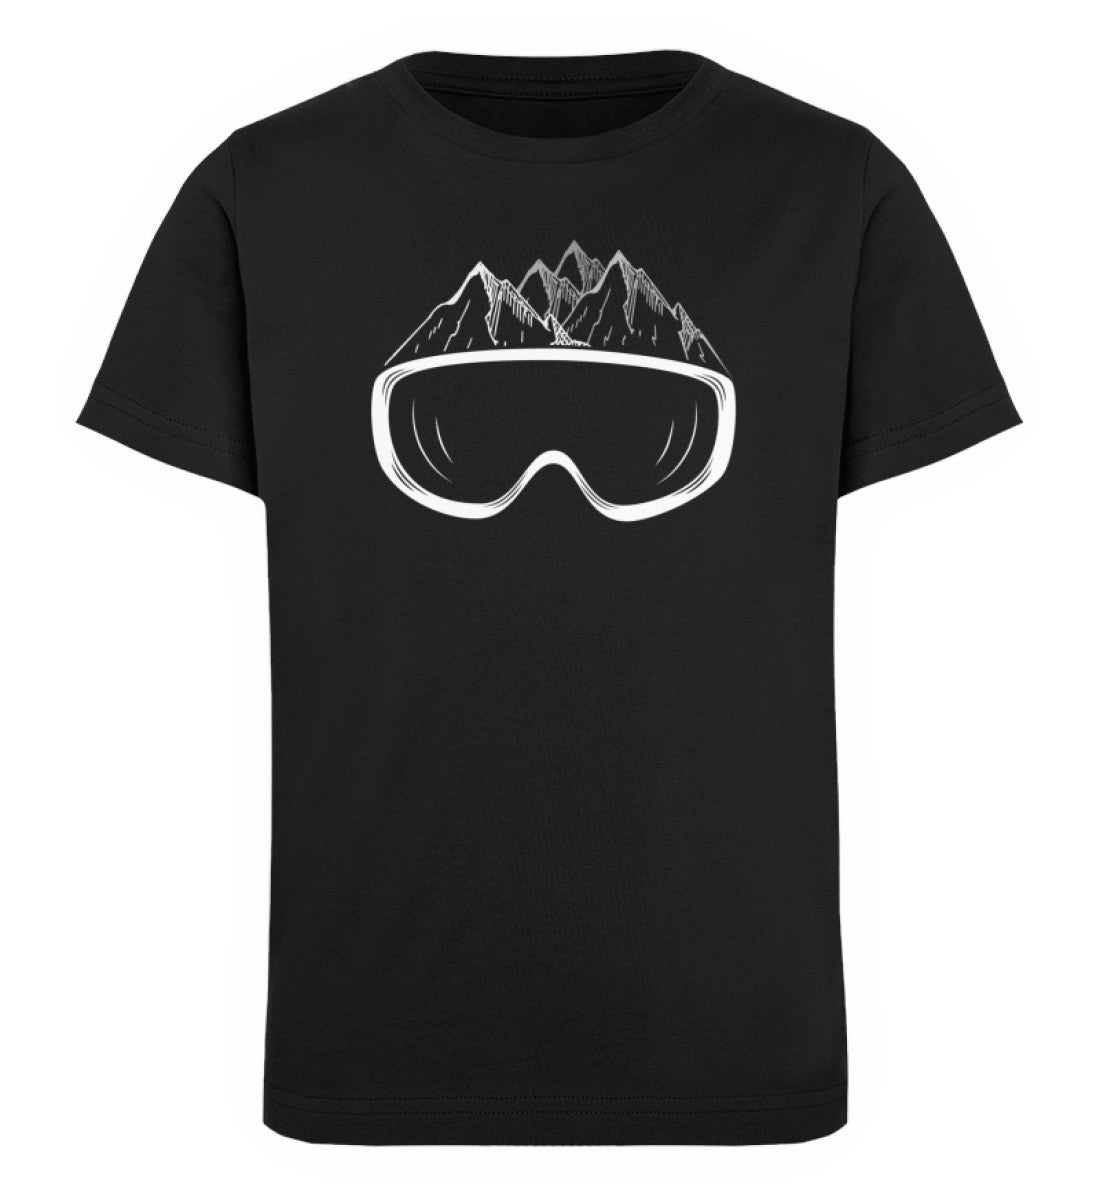 Wintersporteln - Kinder Premium Organic T-Shirt Schwarz